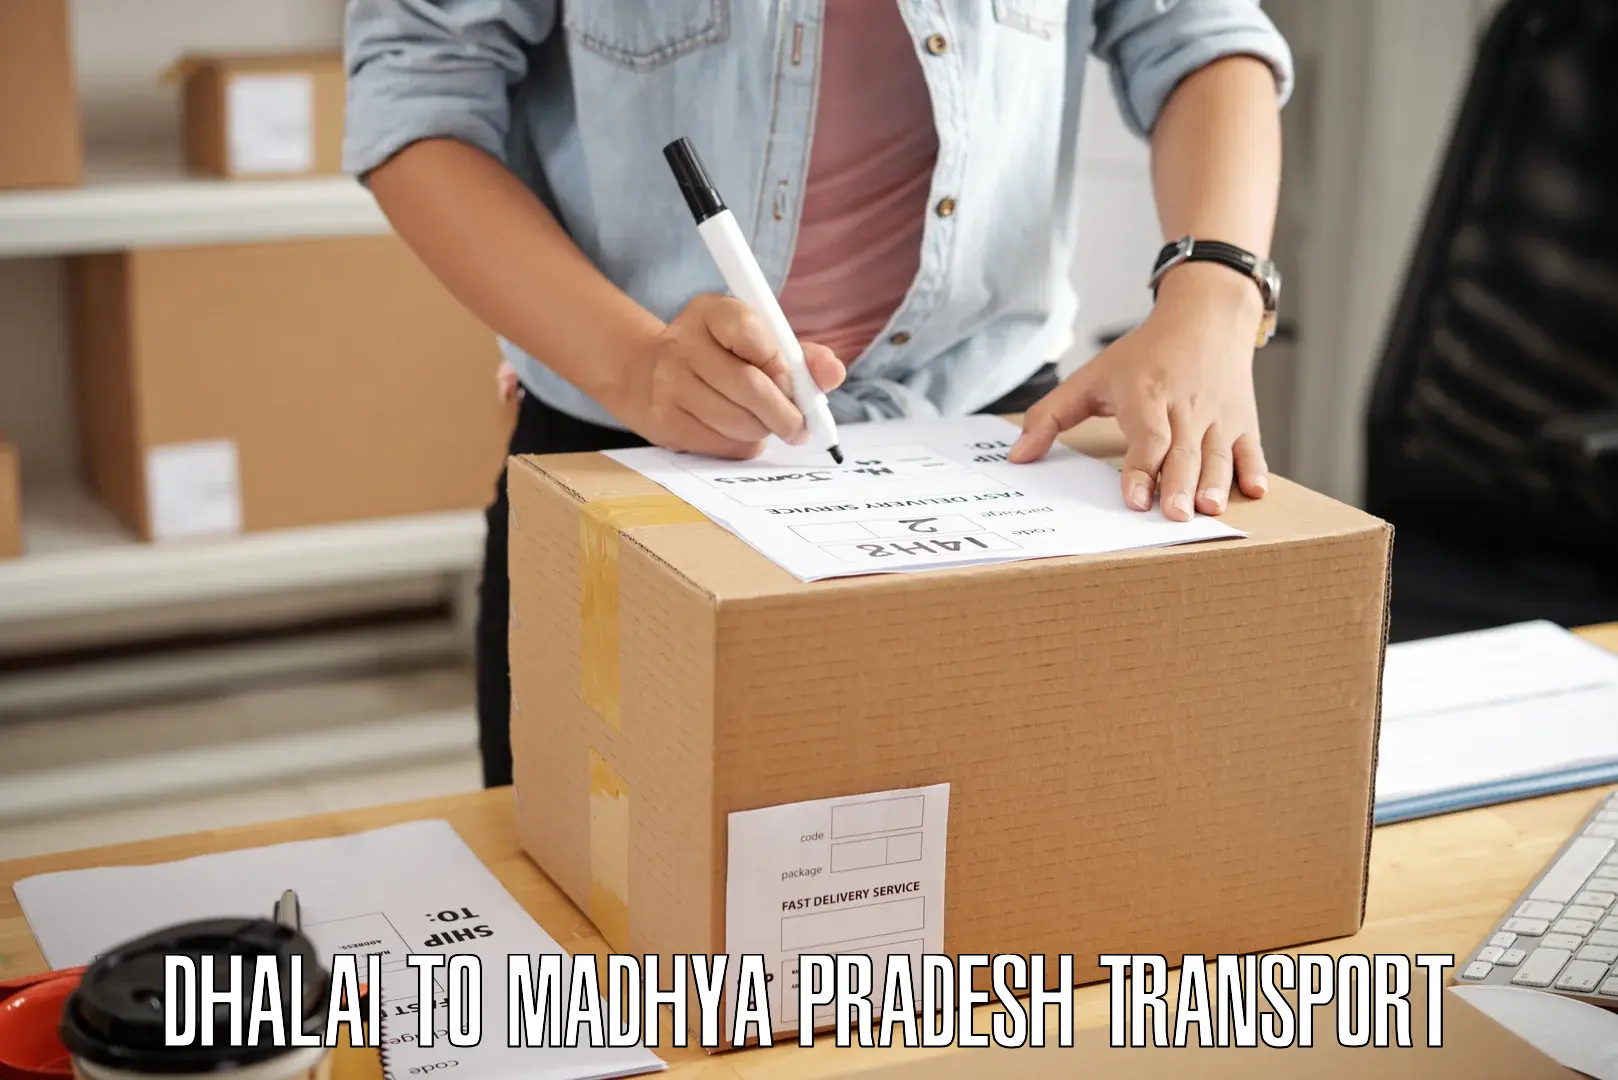 Furniture transport service Dhalai to Ratangarh MP